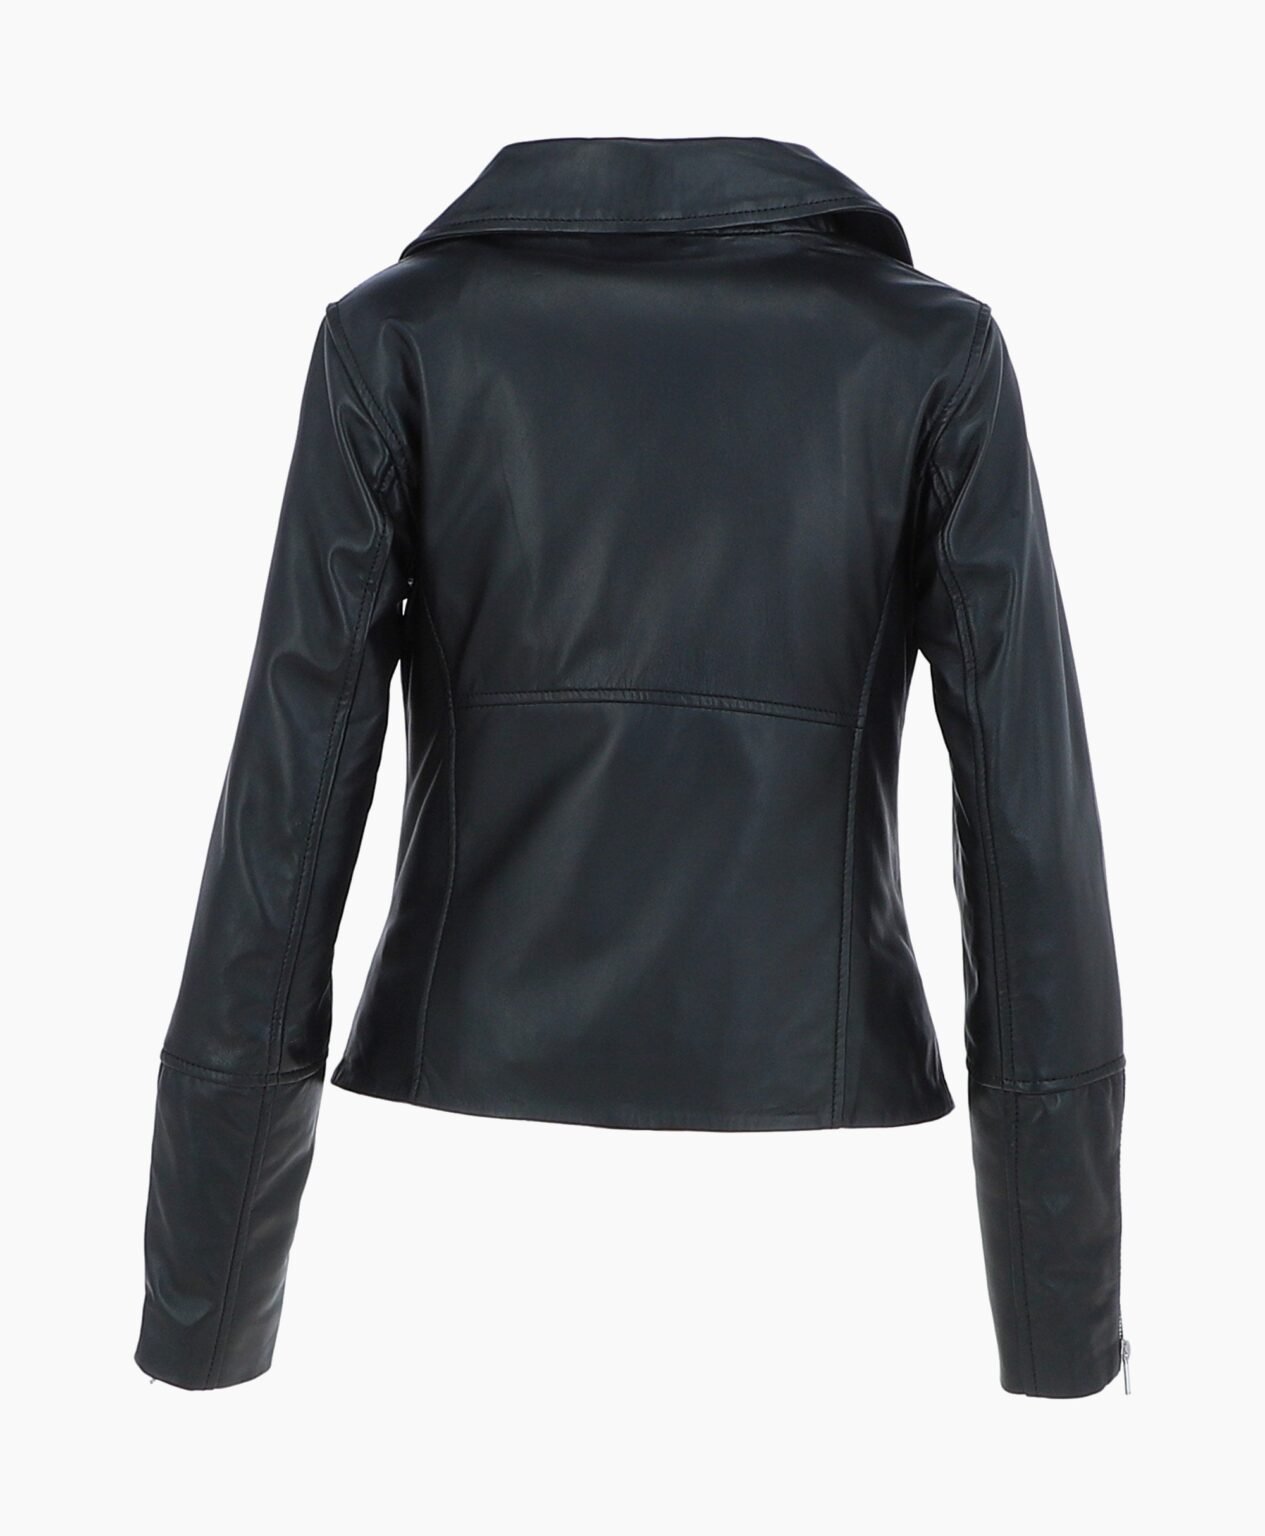 vogue-jacket-leather-biker-jacket-black-greeley-image202